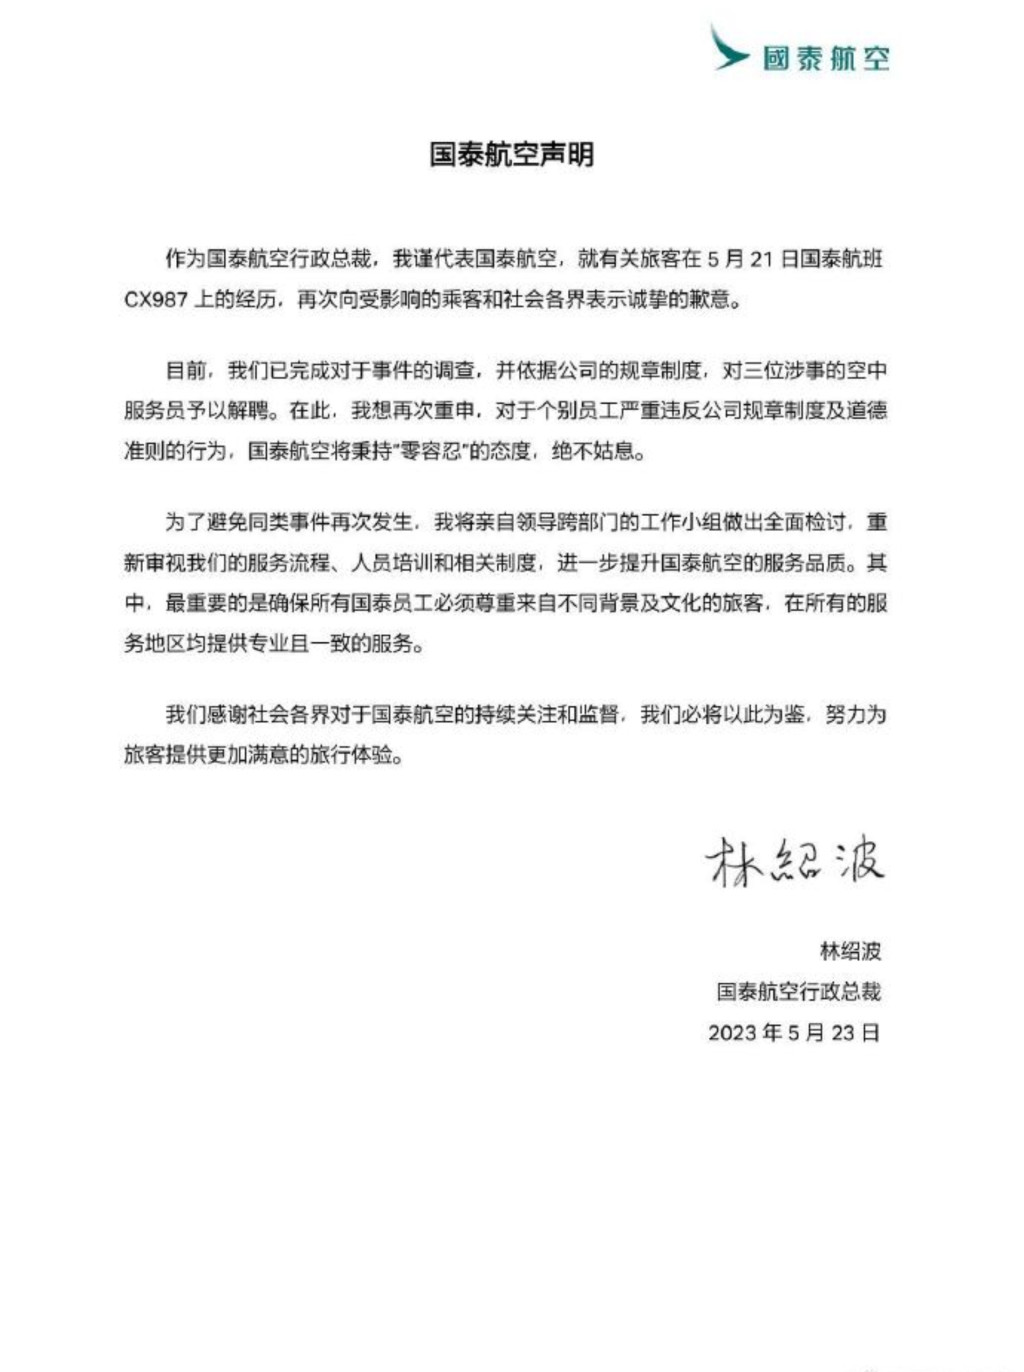 国泰CEO林绍波5月23日晚上9时多在微博发声明道歉。